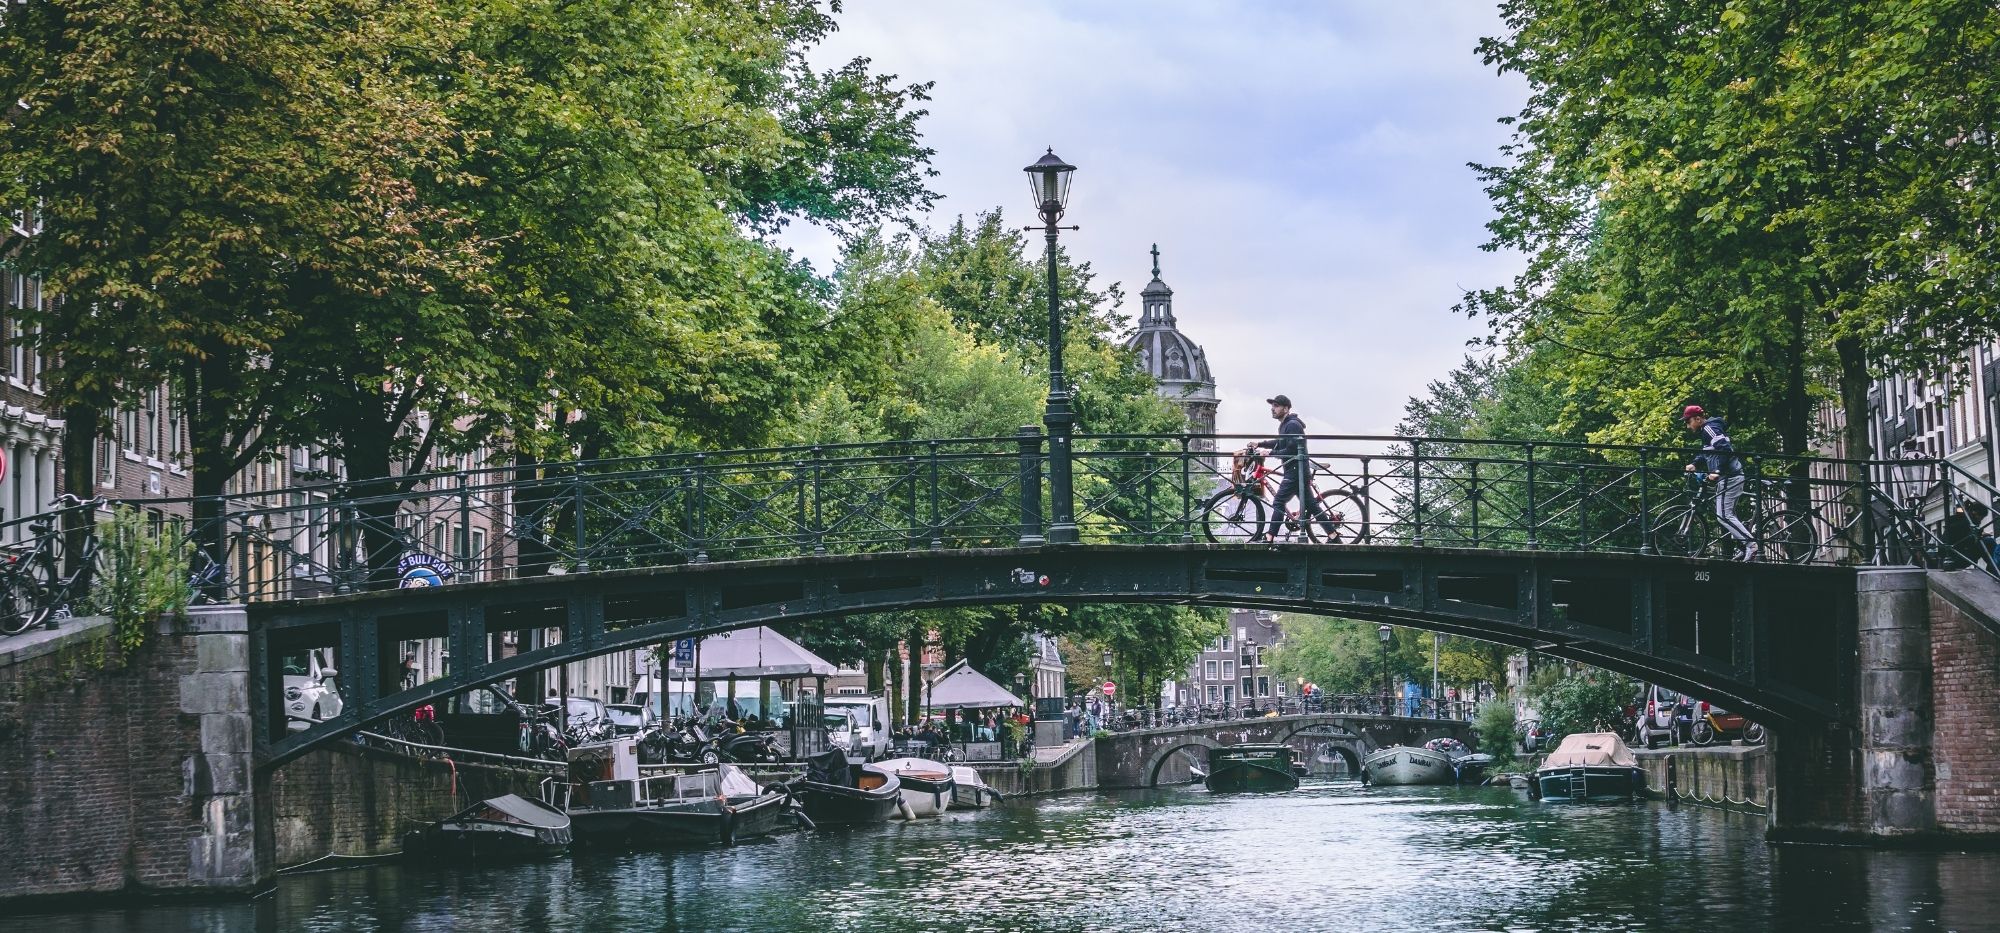 Kanały i mosty w Amsterdamie - symbol holenderskiej stolicy